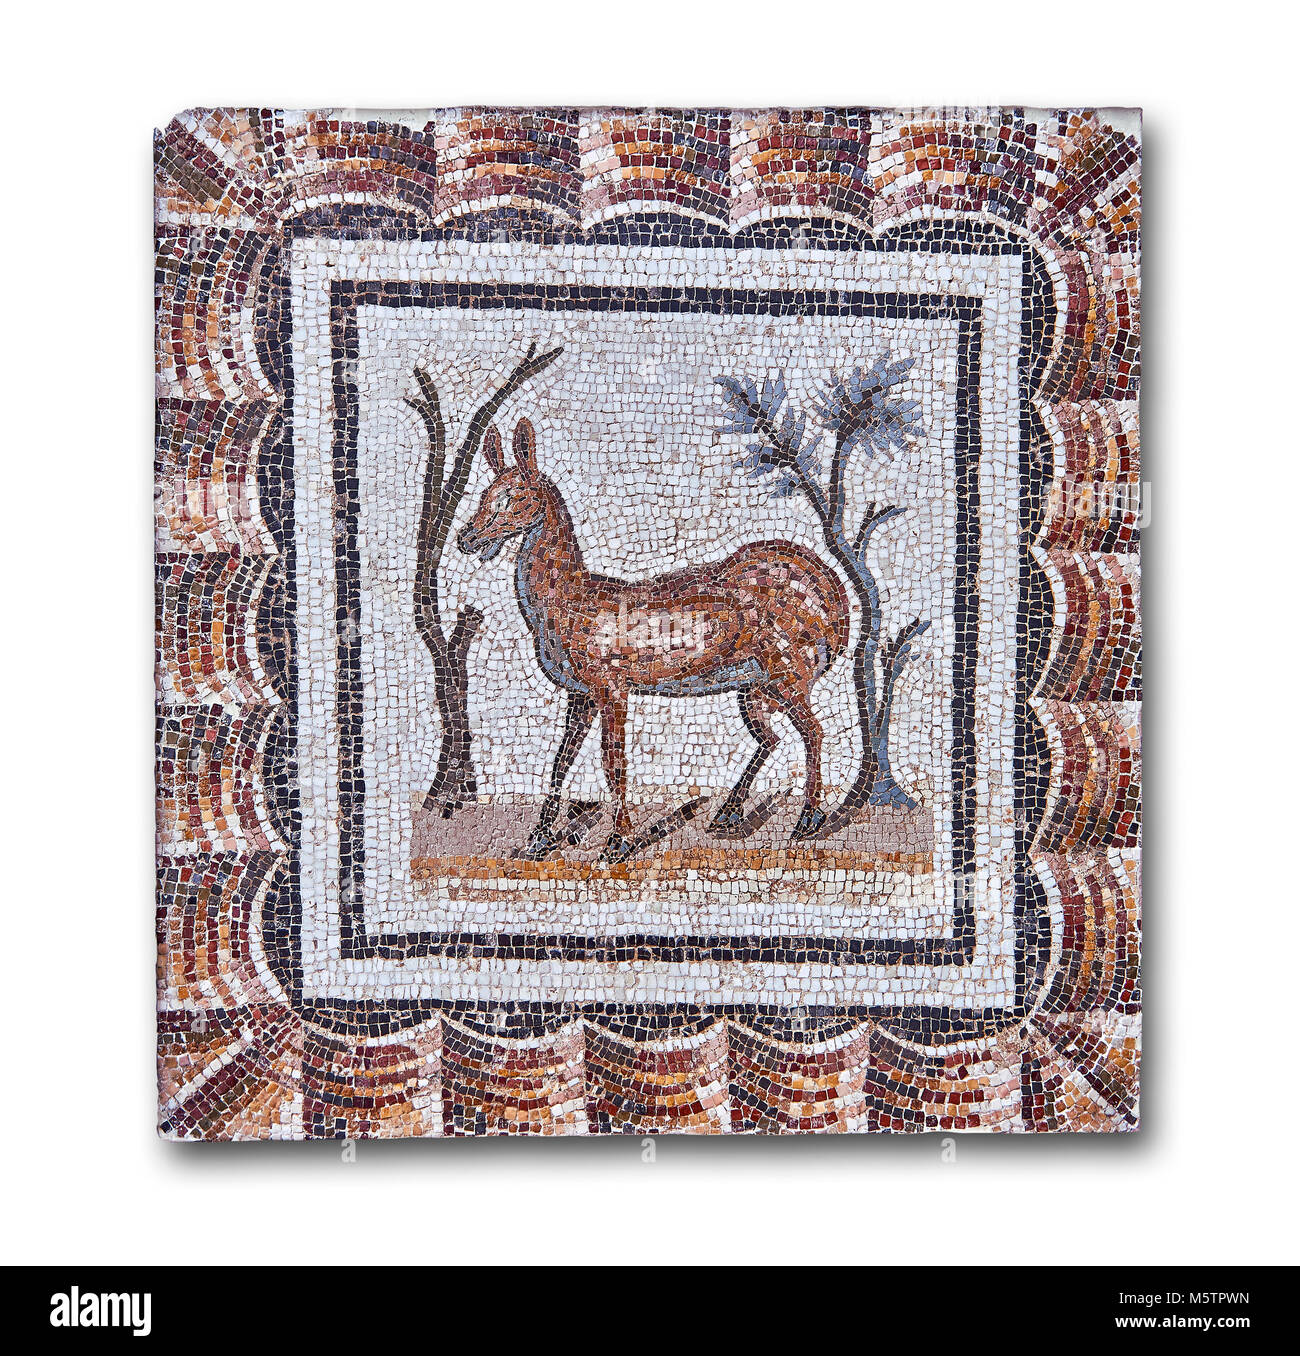 3e siècle mosaïque romaine l'inscription de deux cerfs entre deux arbustes. Thysdrus (El Jem), Tunisie. Le Musée du Bardo, Tunis, Tunisie. Fond blanc Banque D'Images